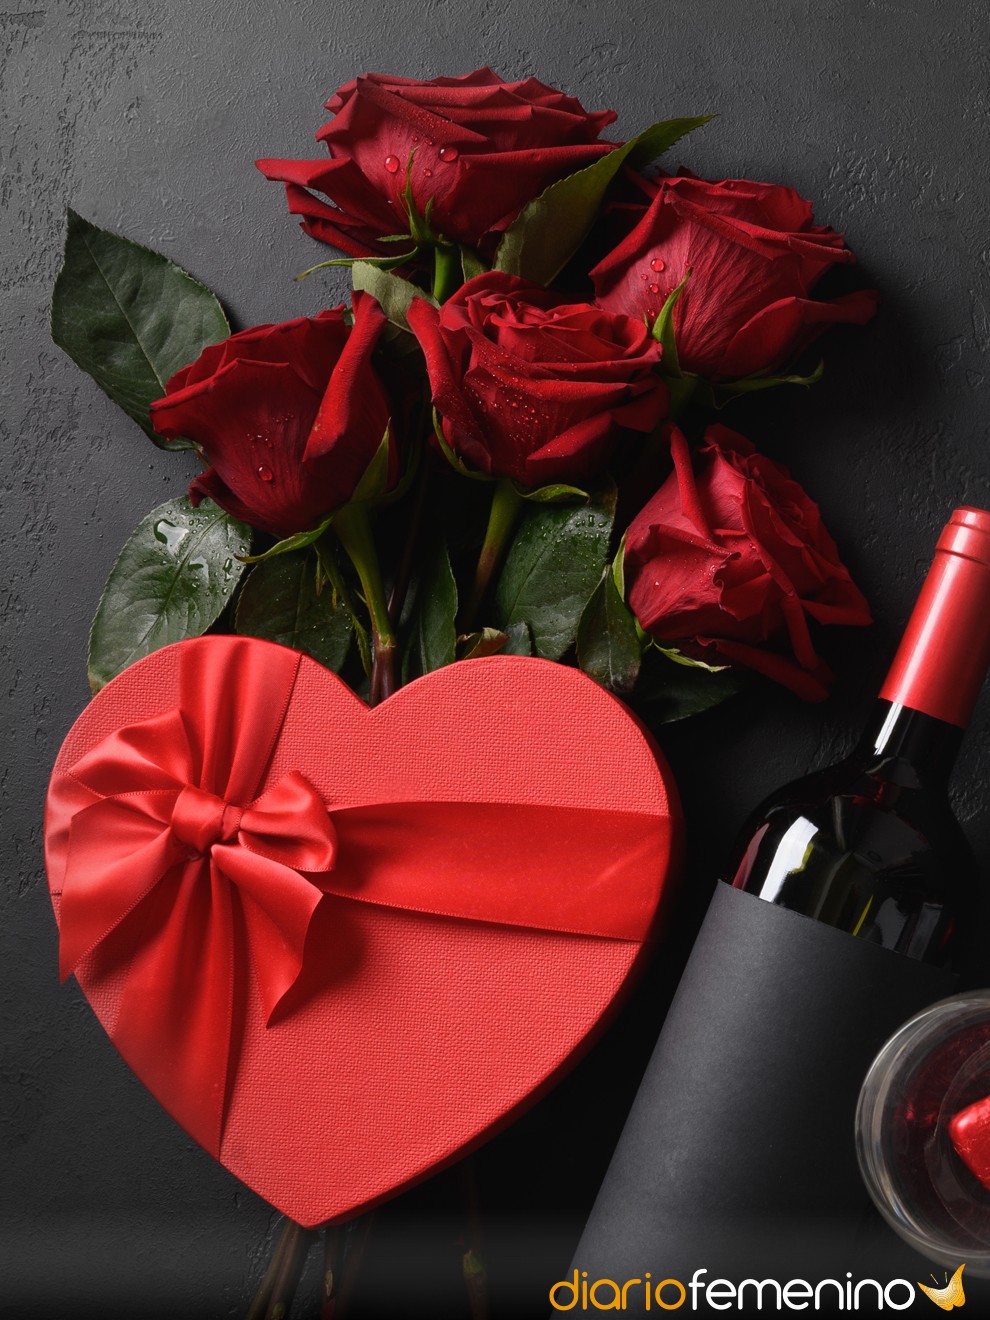 Las ideas más económicas para sorprender a tu pareja este San Valentín